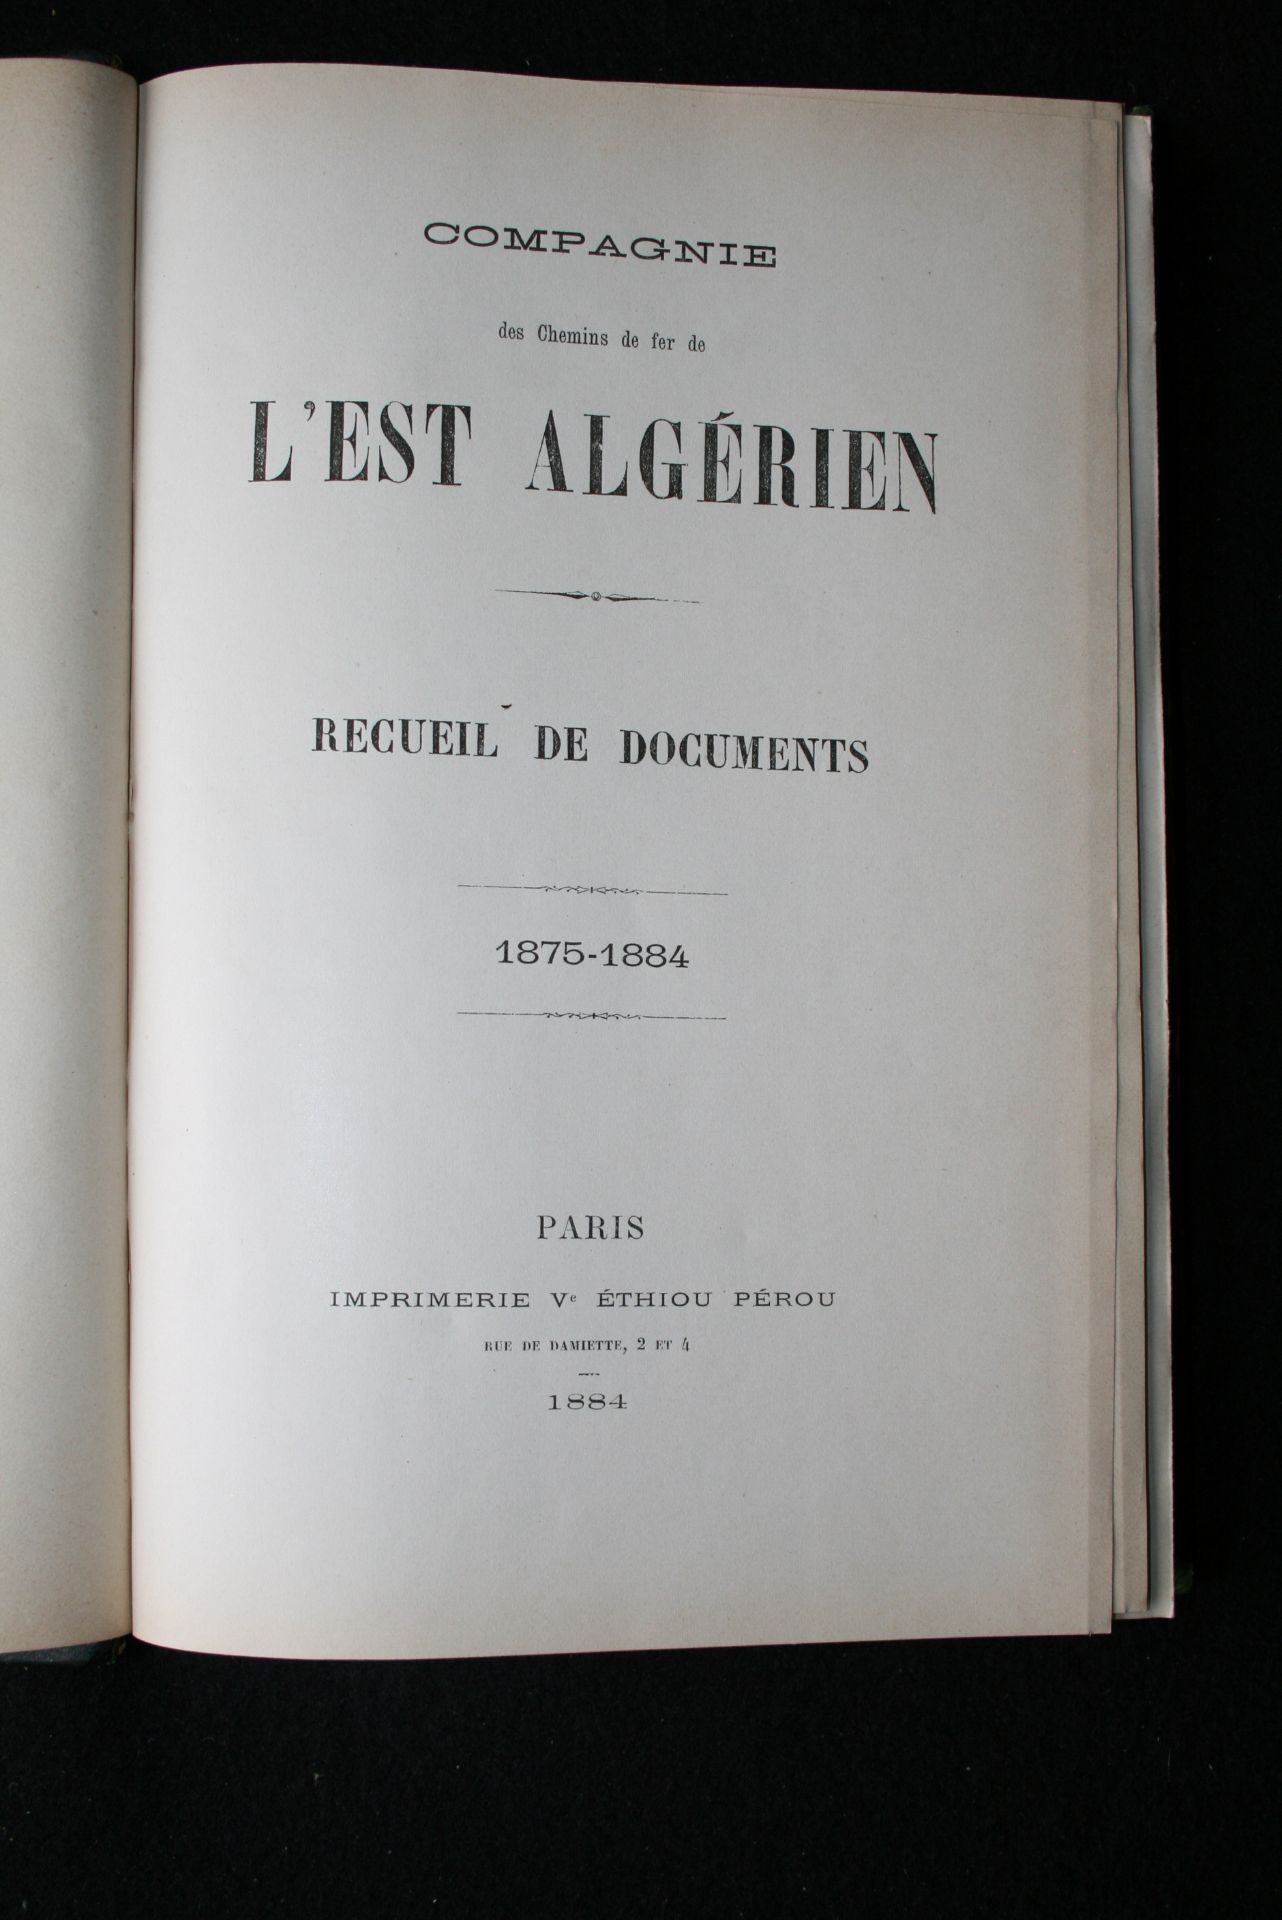 Compagnie des Chemins de fer de l’Est Algérien, Recueil de documents : 1875-1884 [...] - Bild 3 aus 3